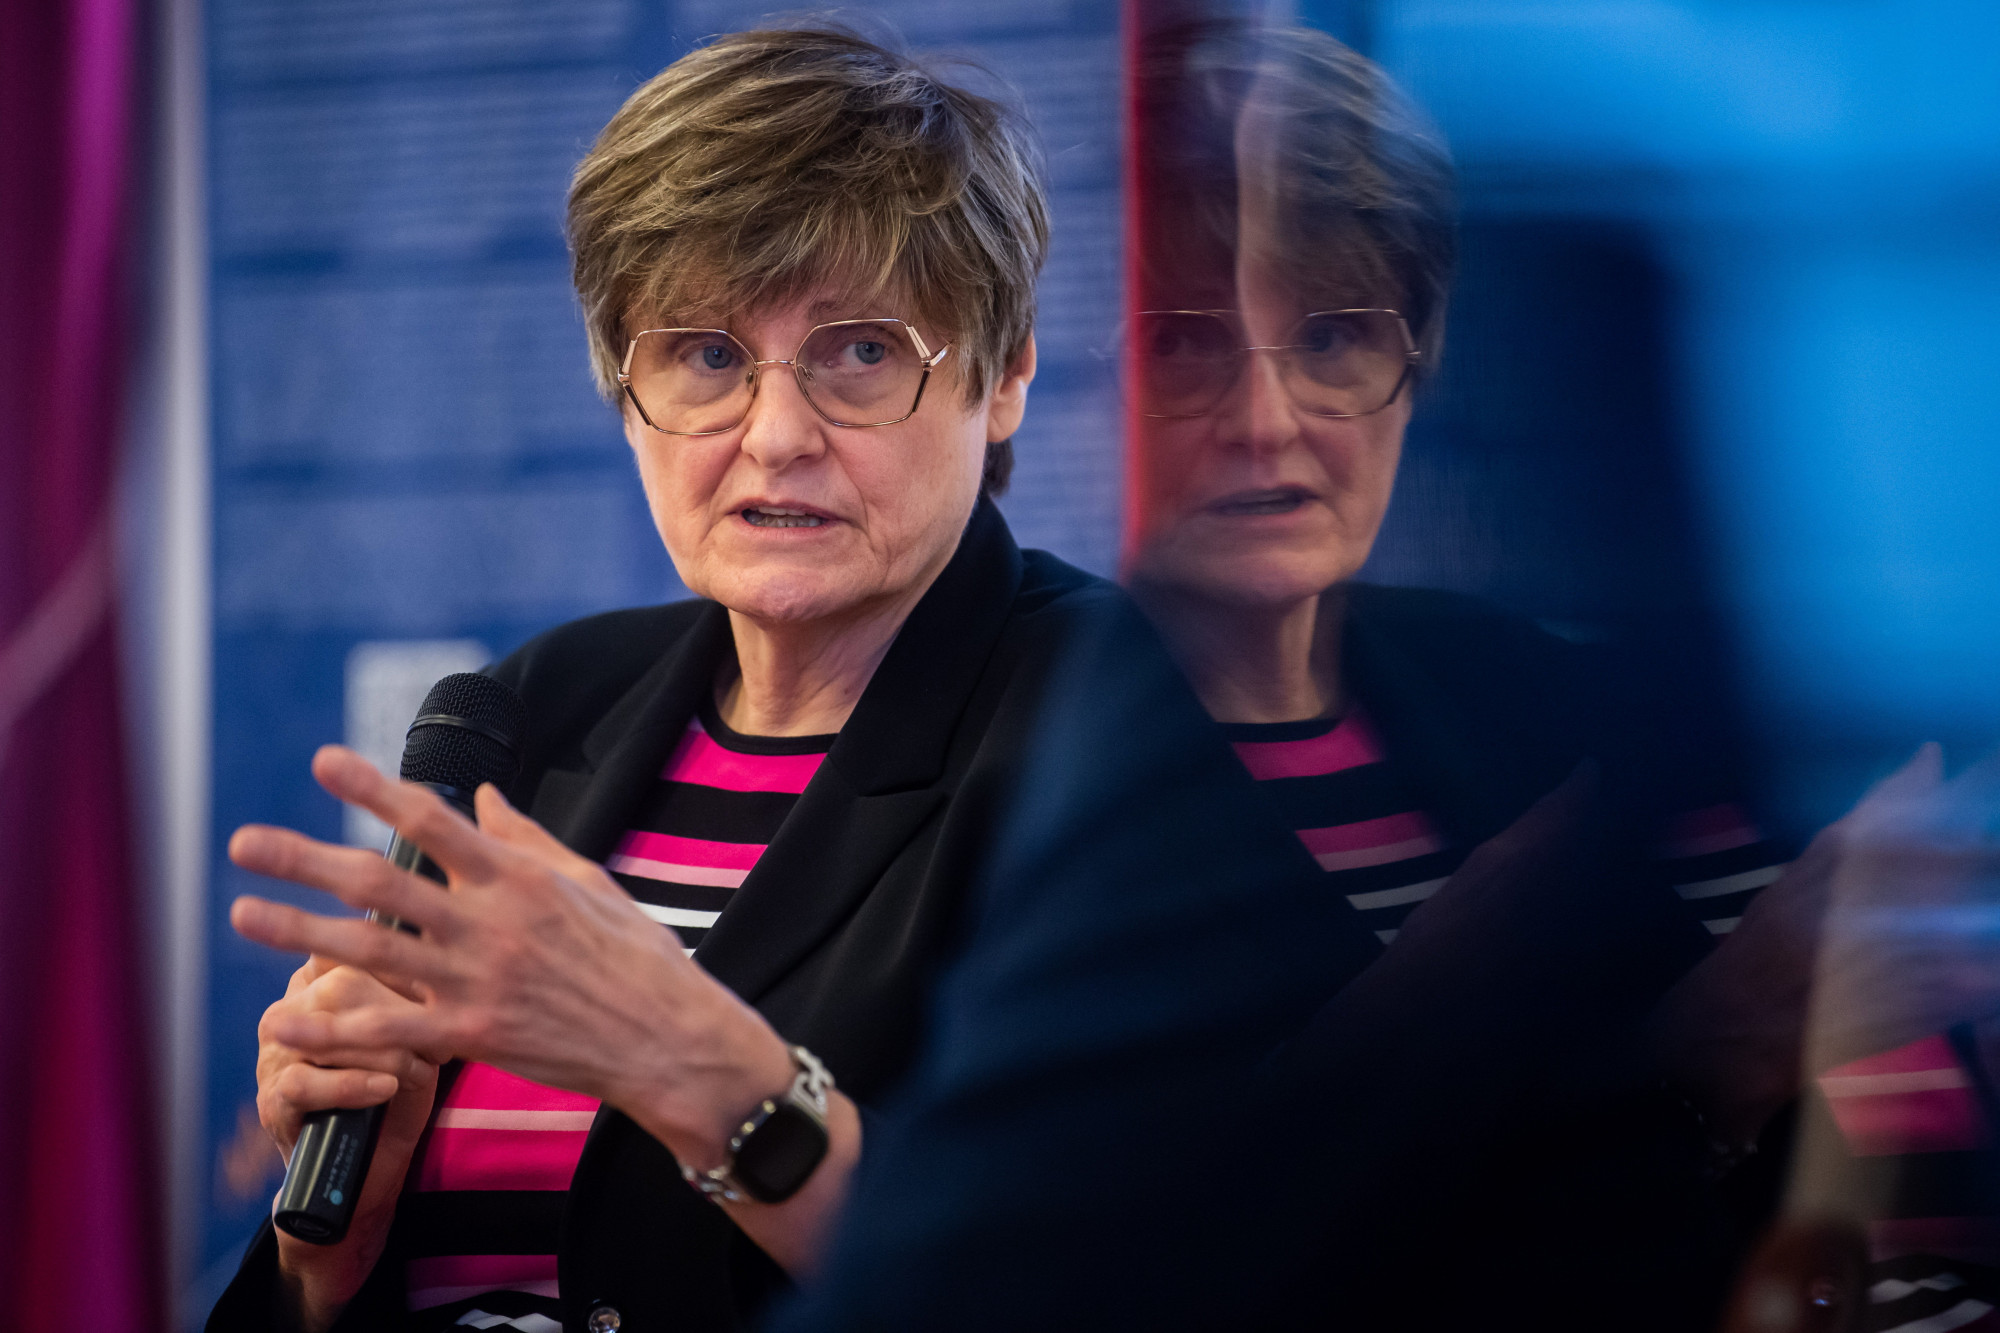 Karikó Katalin a Nobel-díj bejelentése után: Arra kell koncentrálni, amin tudunk változtatni